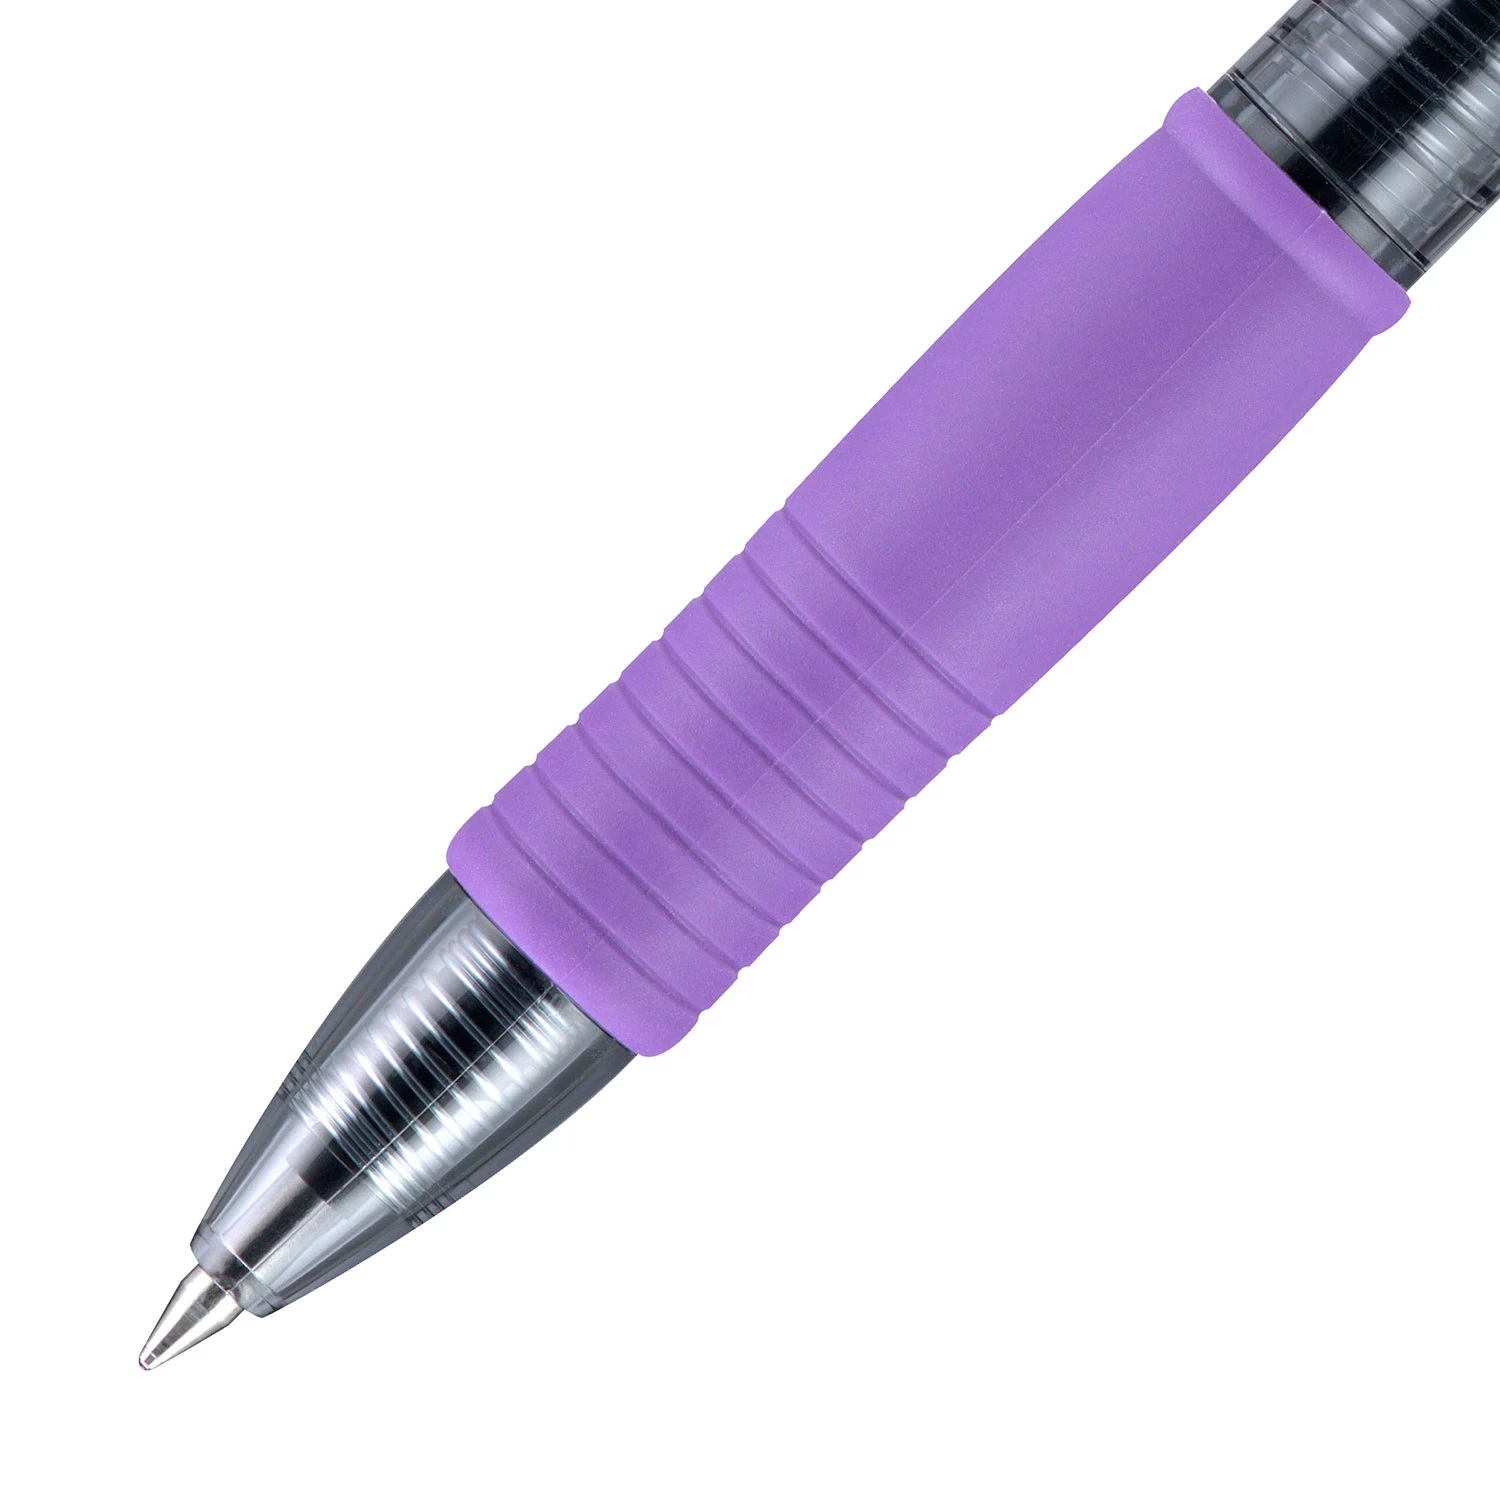 Pilot Automotive Pilot G2 Gel Ink Pens, Fine Point, Assorted Colors, 16 Count